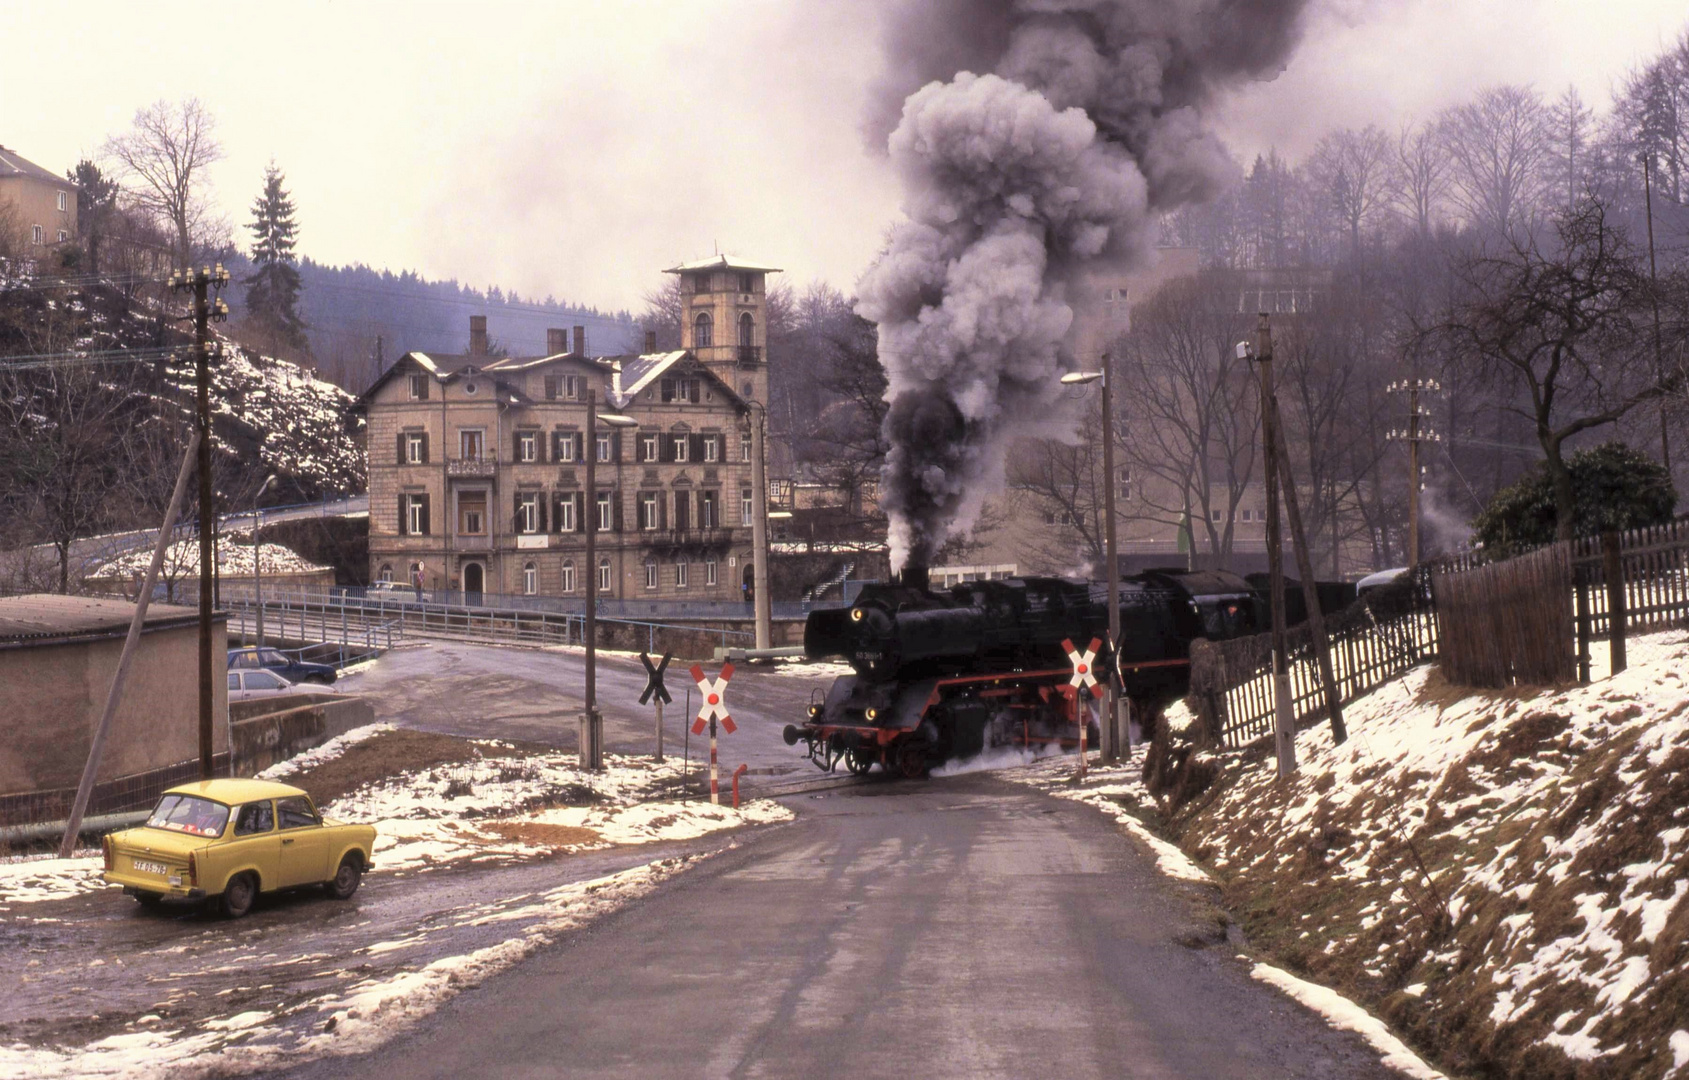 22 Feb.1992 in Witzschdorf